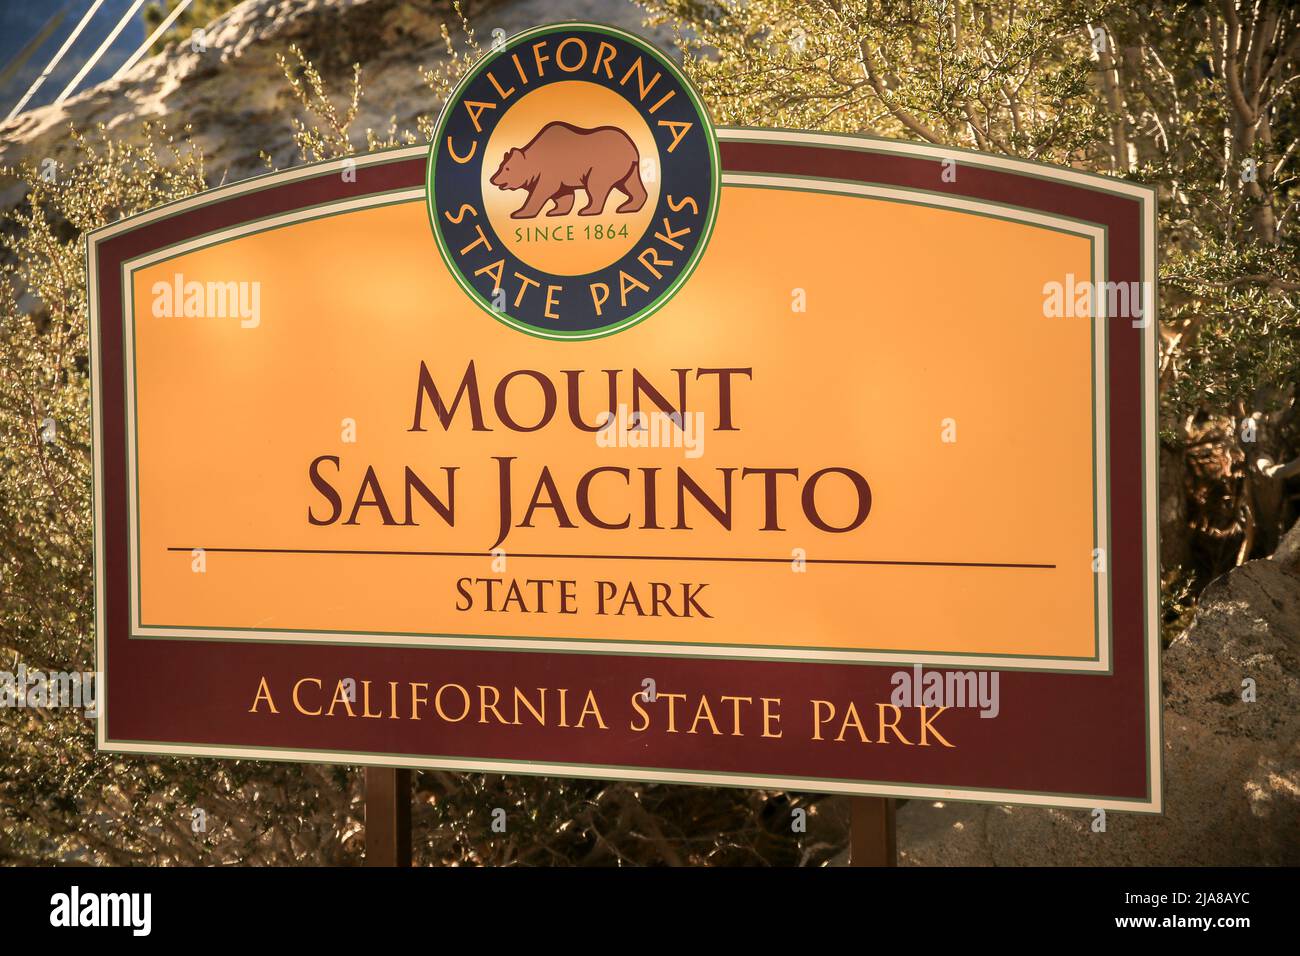 Entrée au mont San Jacinto, panneau du parc national de Californie. Panneaux d'affichage d'informations, Palm Springs, CA, États-Unis Banque D'Images